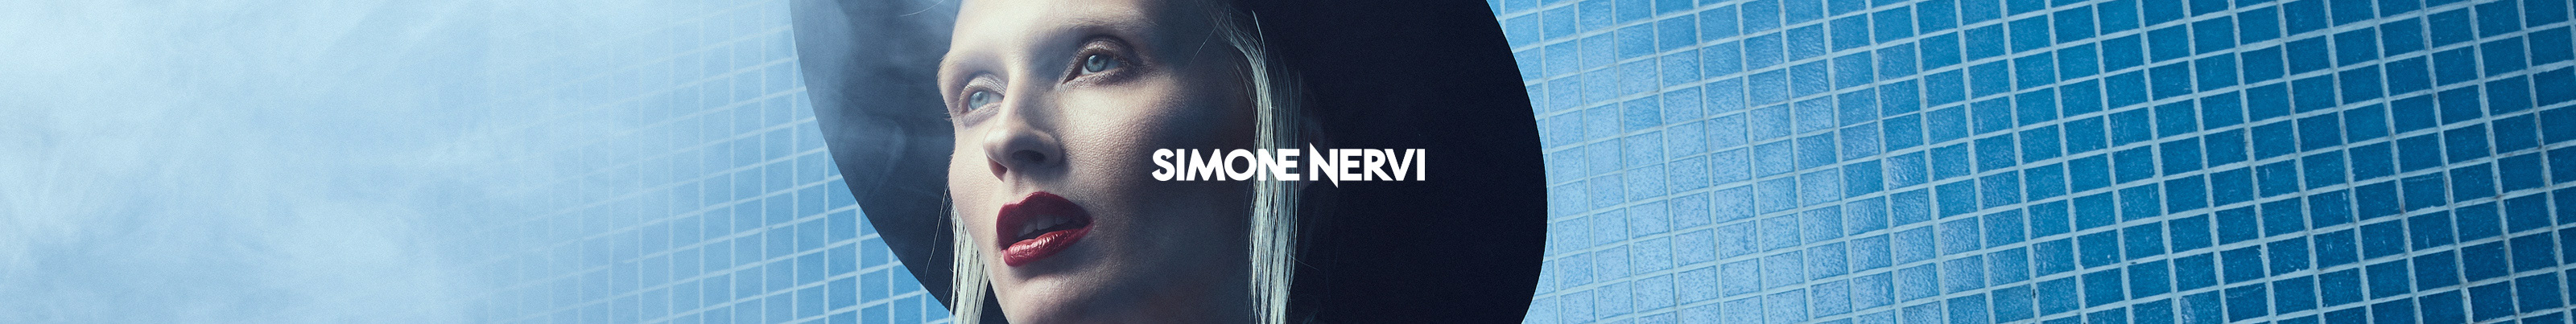 Simone Nervi's profile banner